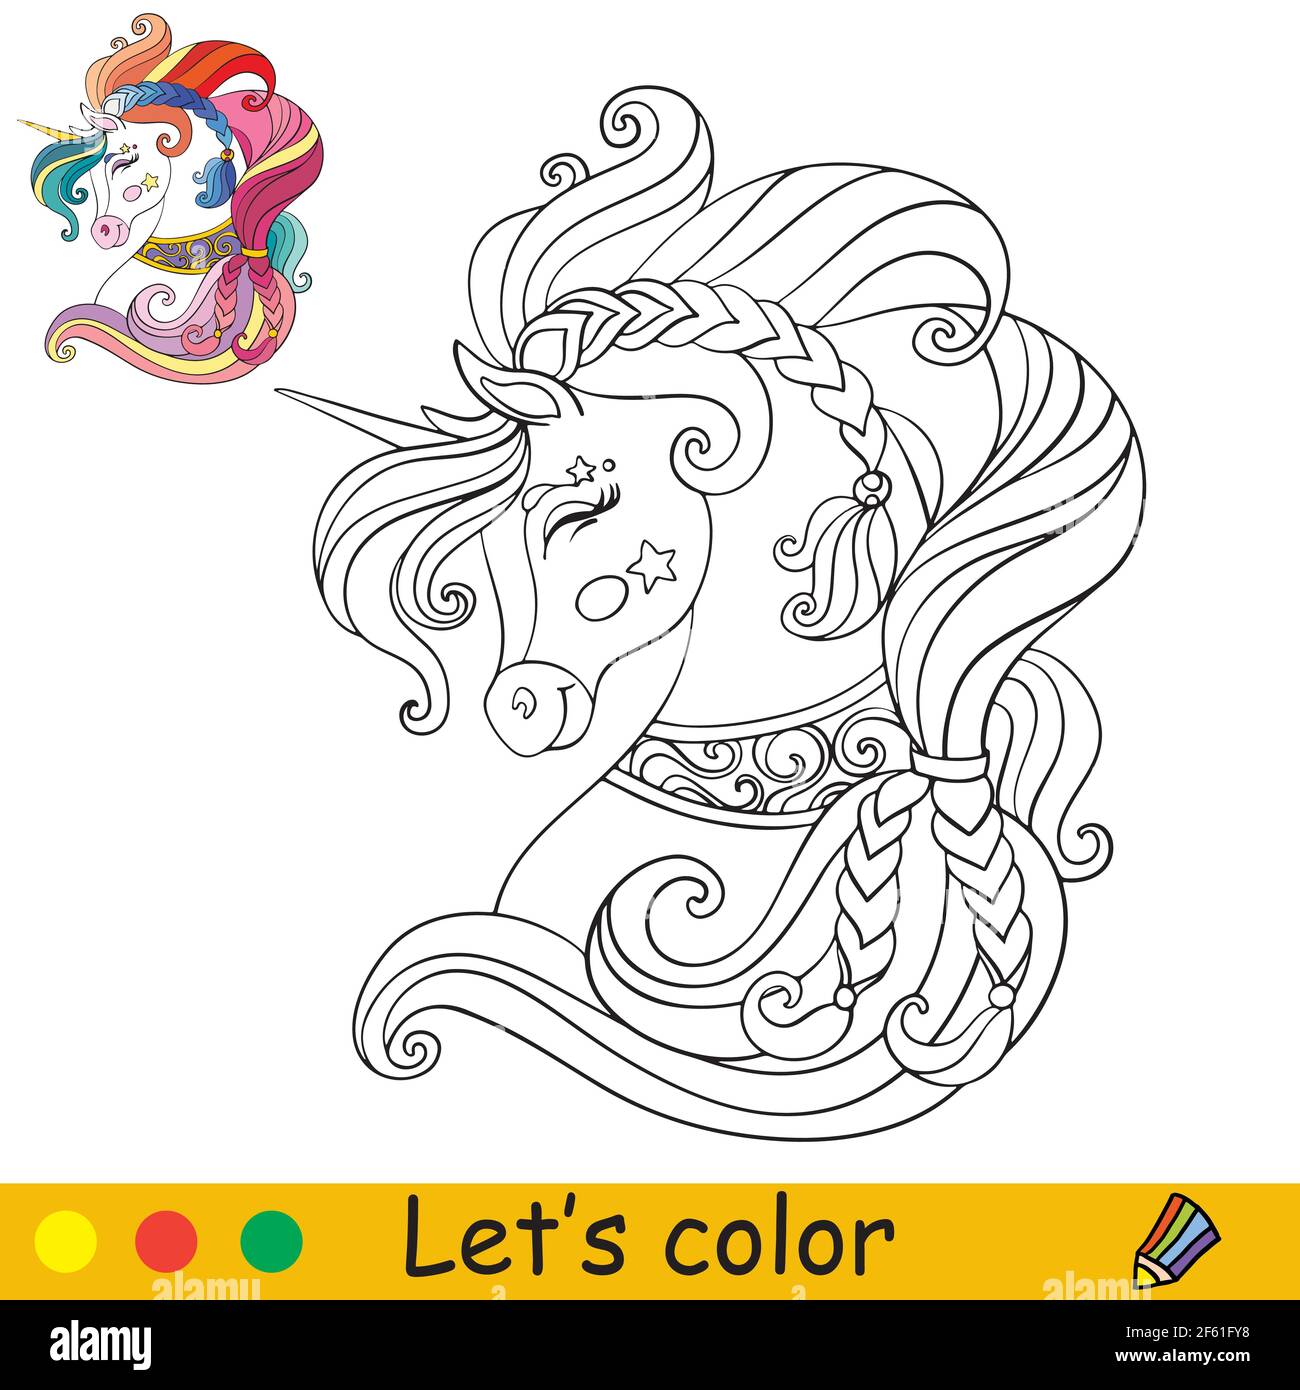 Testa ornata di unicorno in profilo. Colorare la pagina del libro con il modello colorato. Illustrazione isolata di cartoni animati vettoriali. Per colorare libro, formazione, stampa Illustrazione Vettoriale